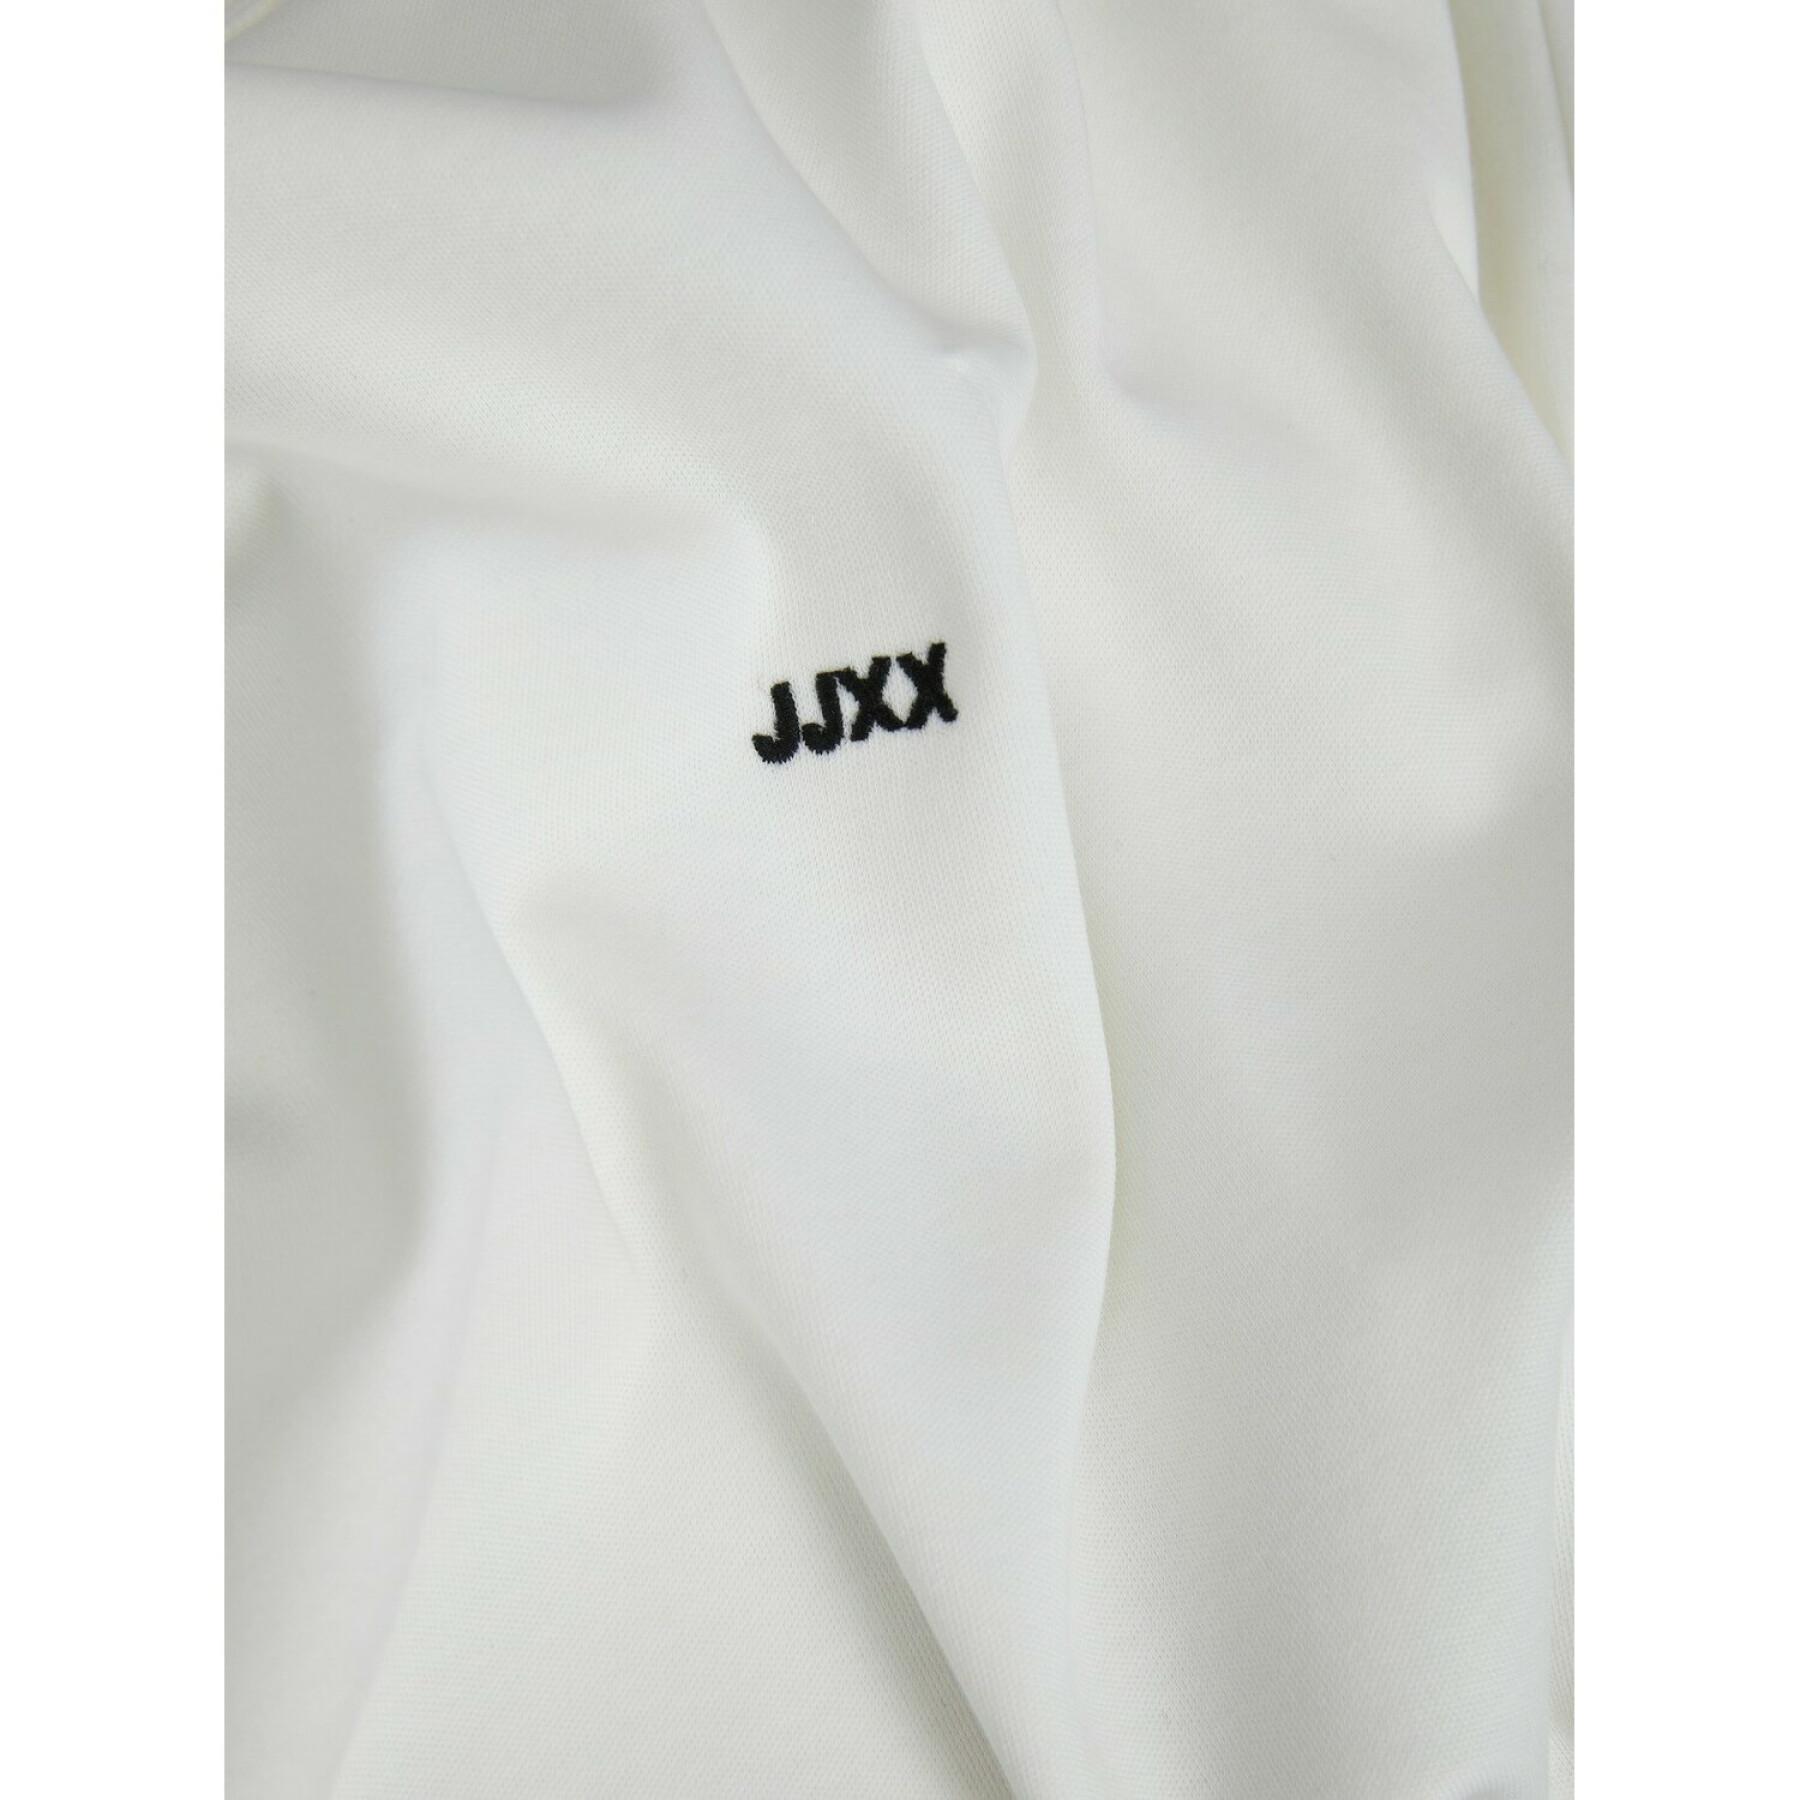 Camiseta grande de mujer JJXX caroline